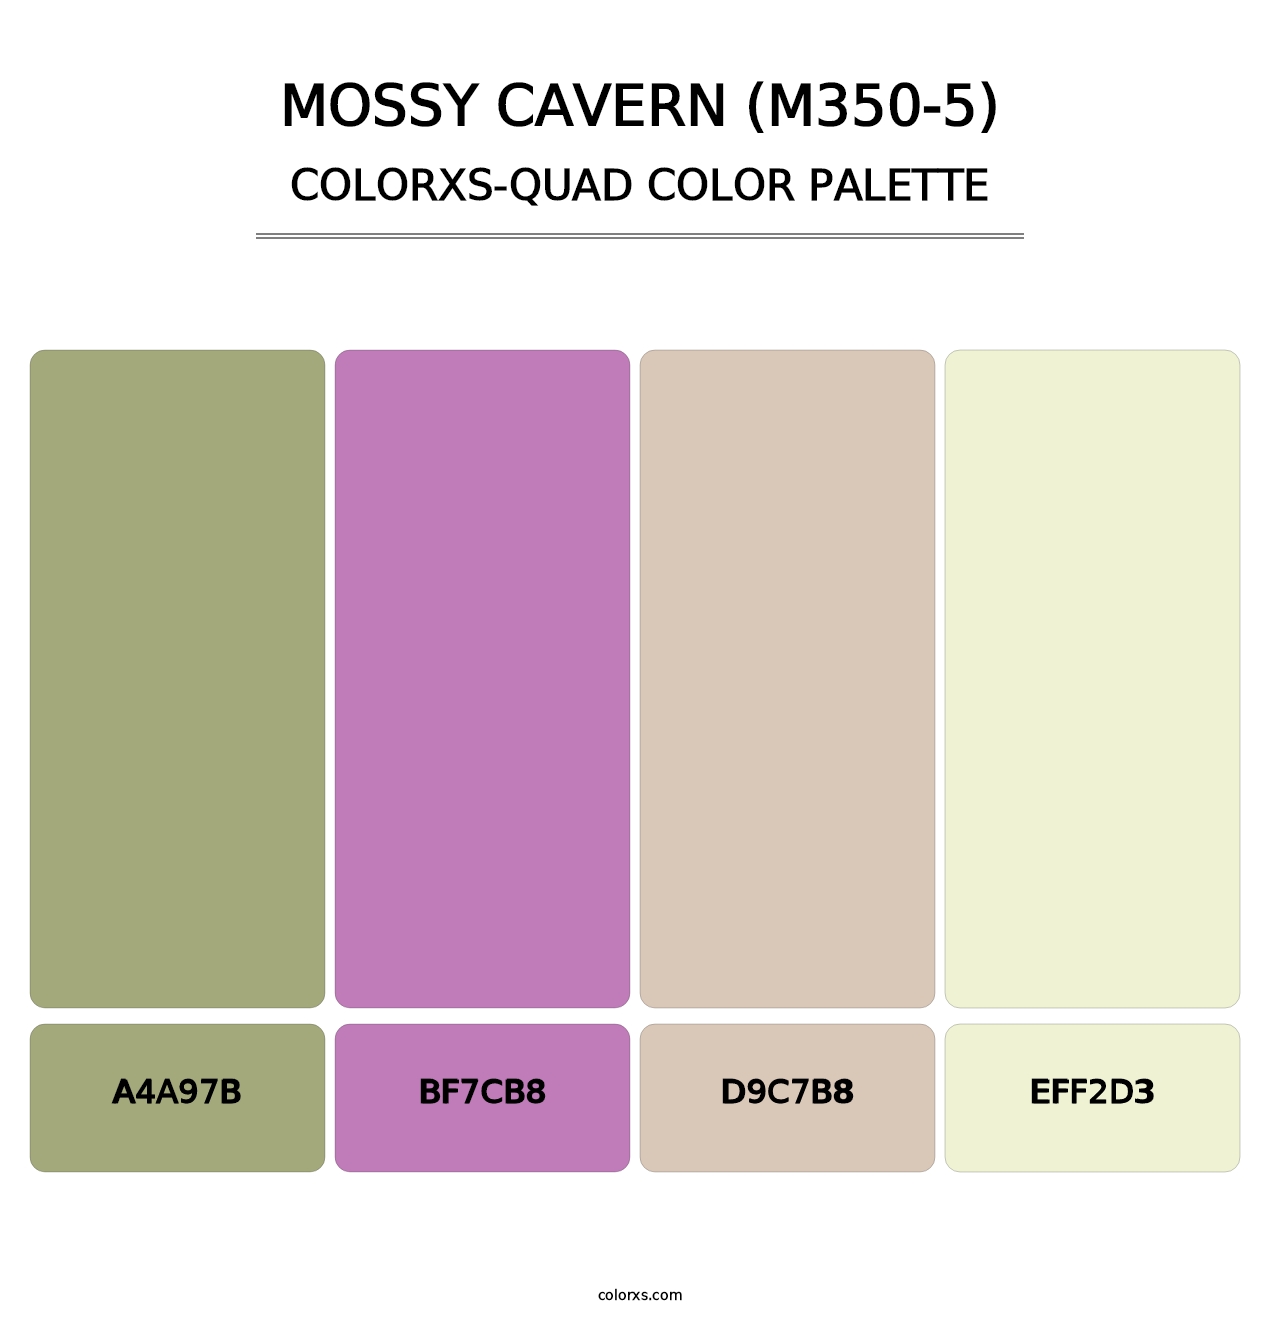 Mossy Cavern (M350-5) - Colorxs Quad Palette